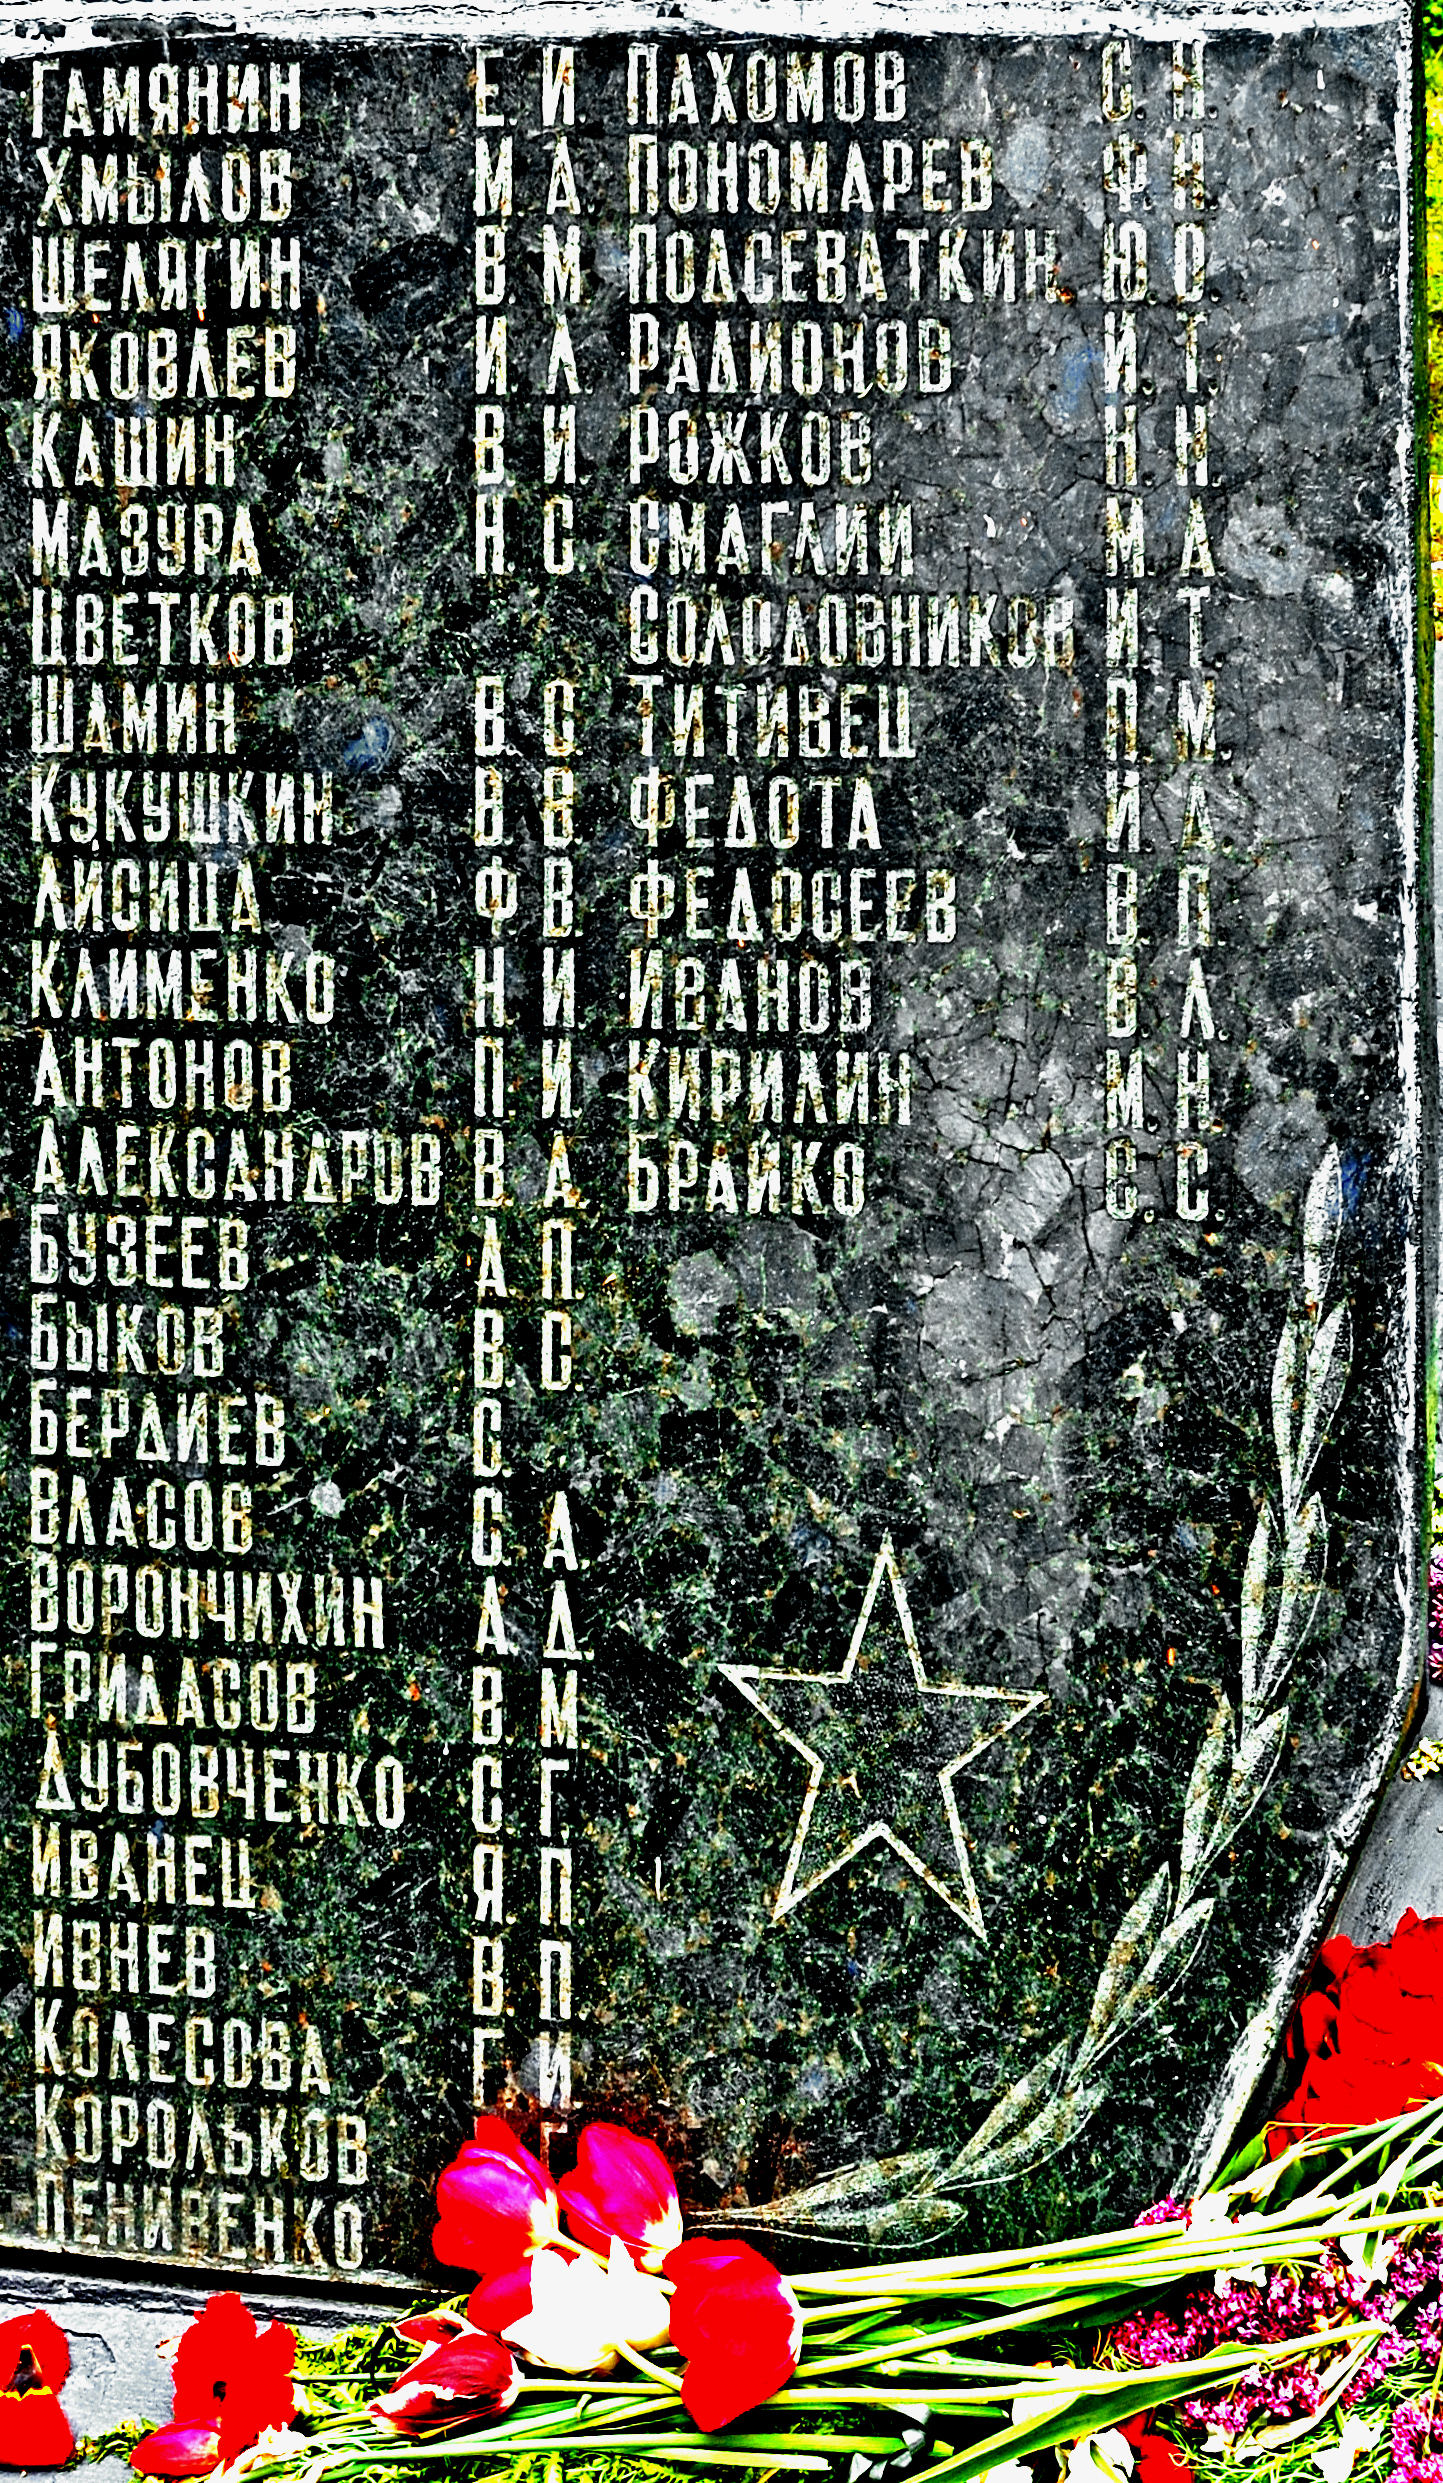 Современный вид братской могилы кладбище п.г.т. Градижска